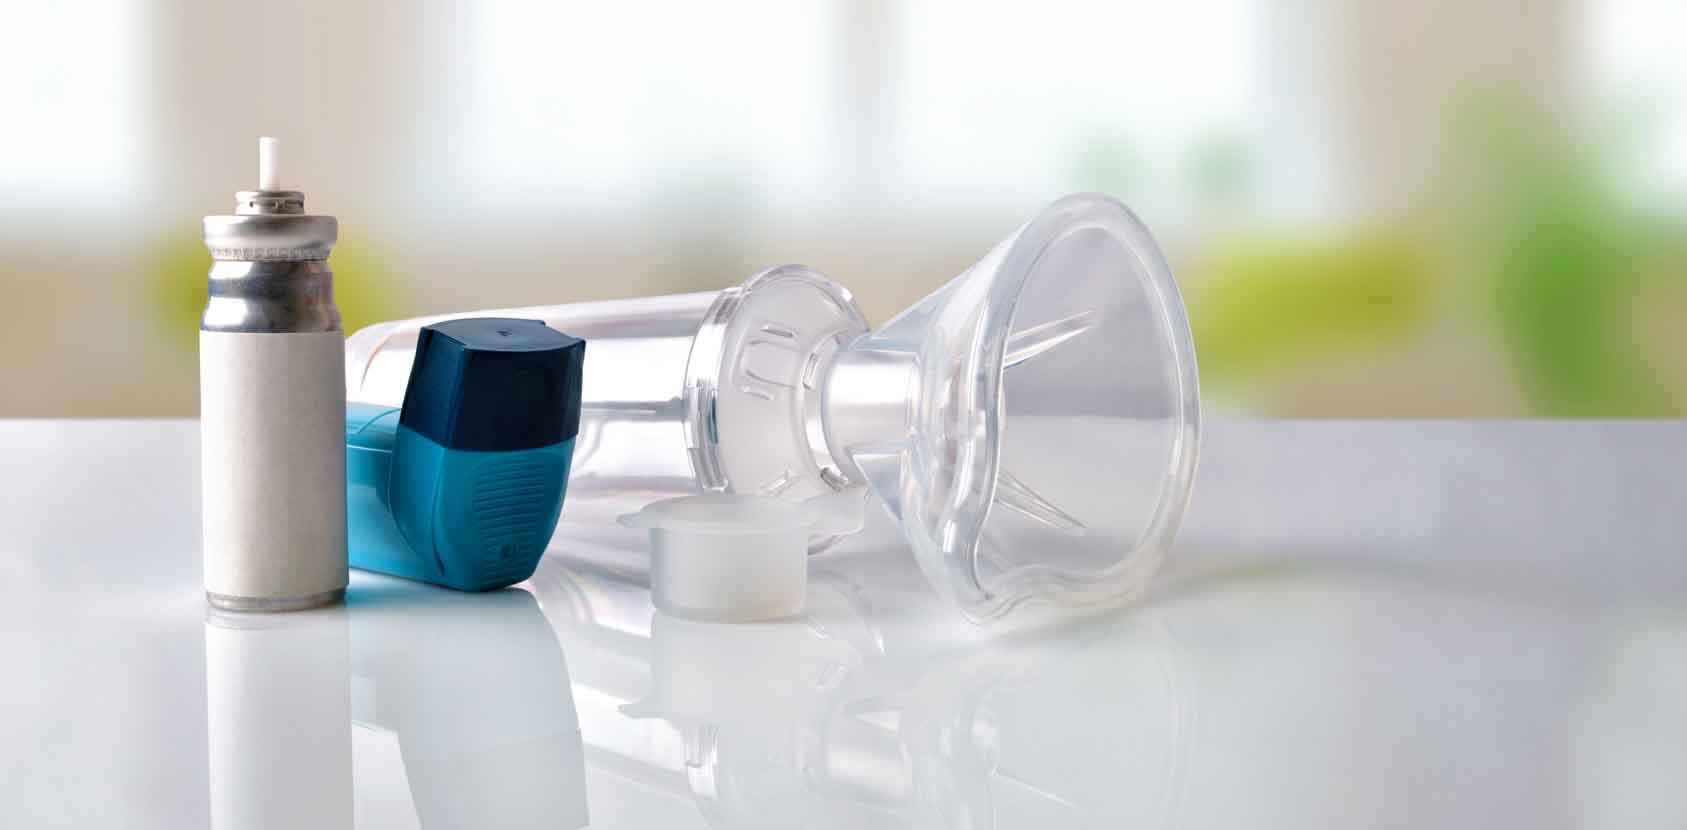 Astma Oskrzelowa Dychawica Oskrzelowa Objawy Przyczyny Leczenie